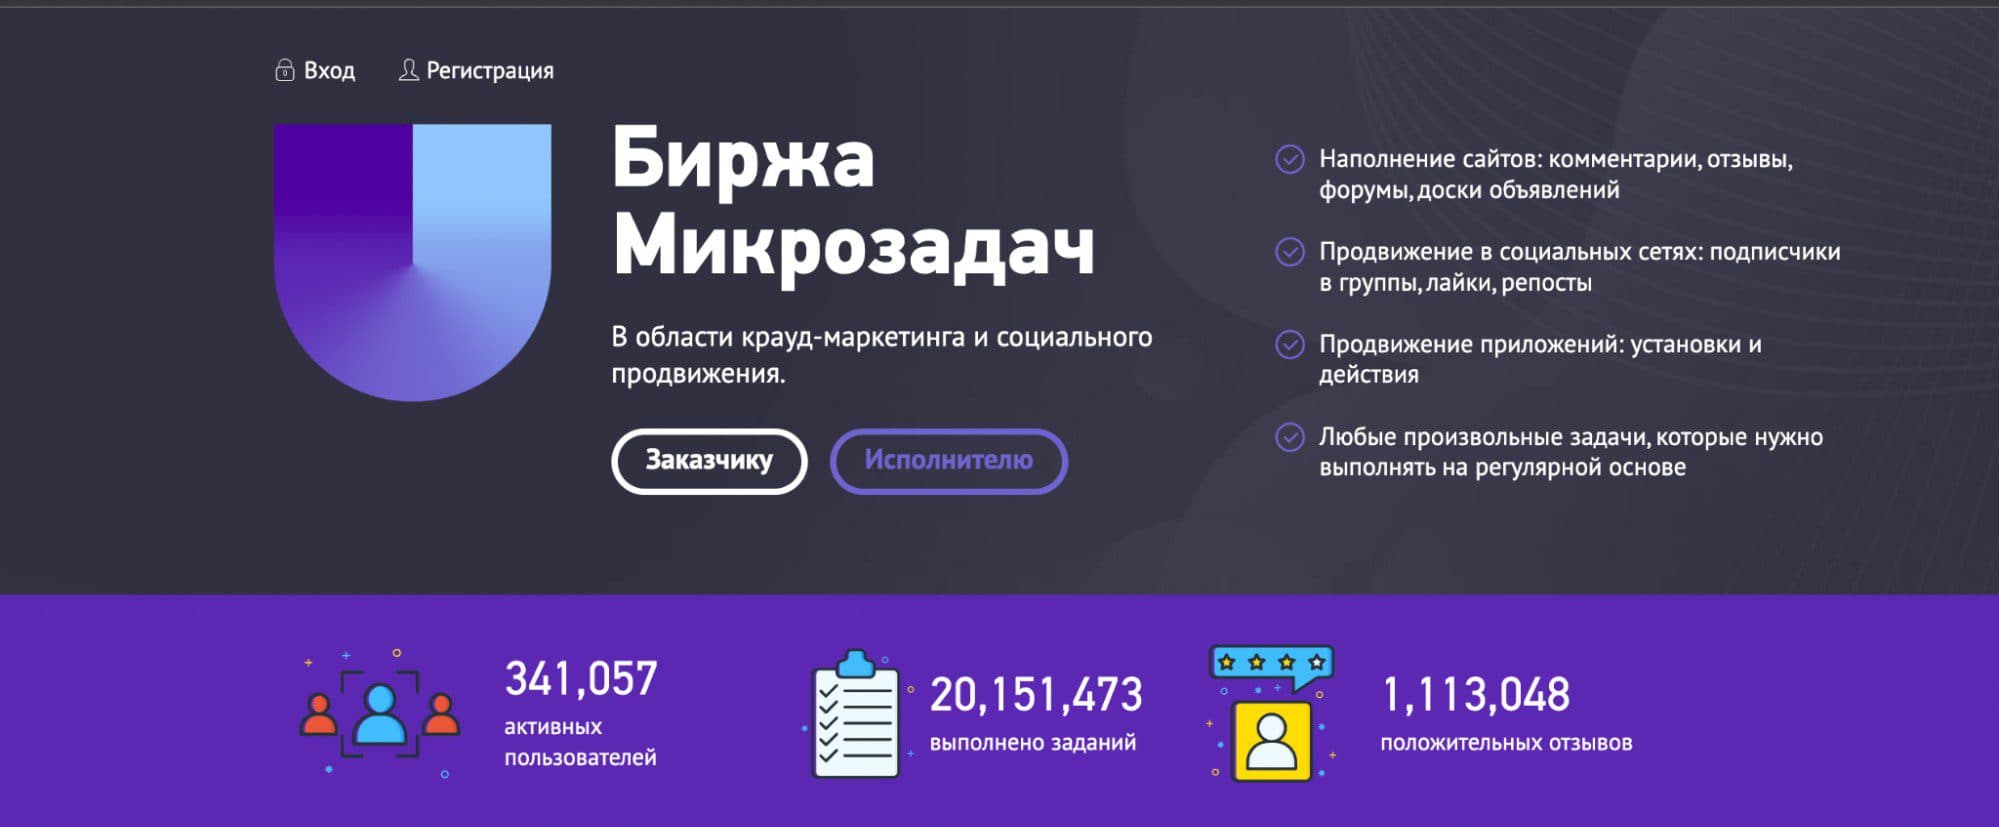 Обзор сайта Unu.ru